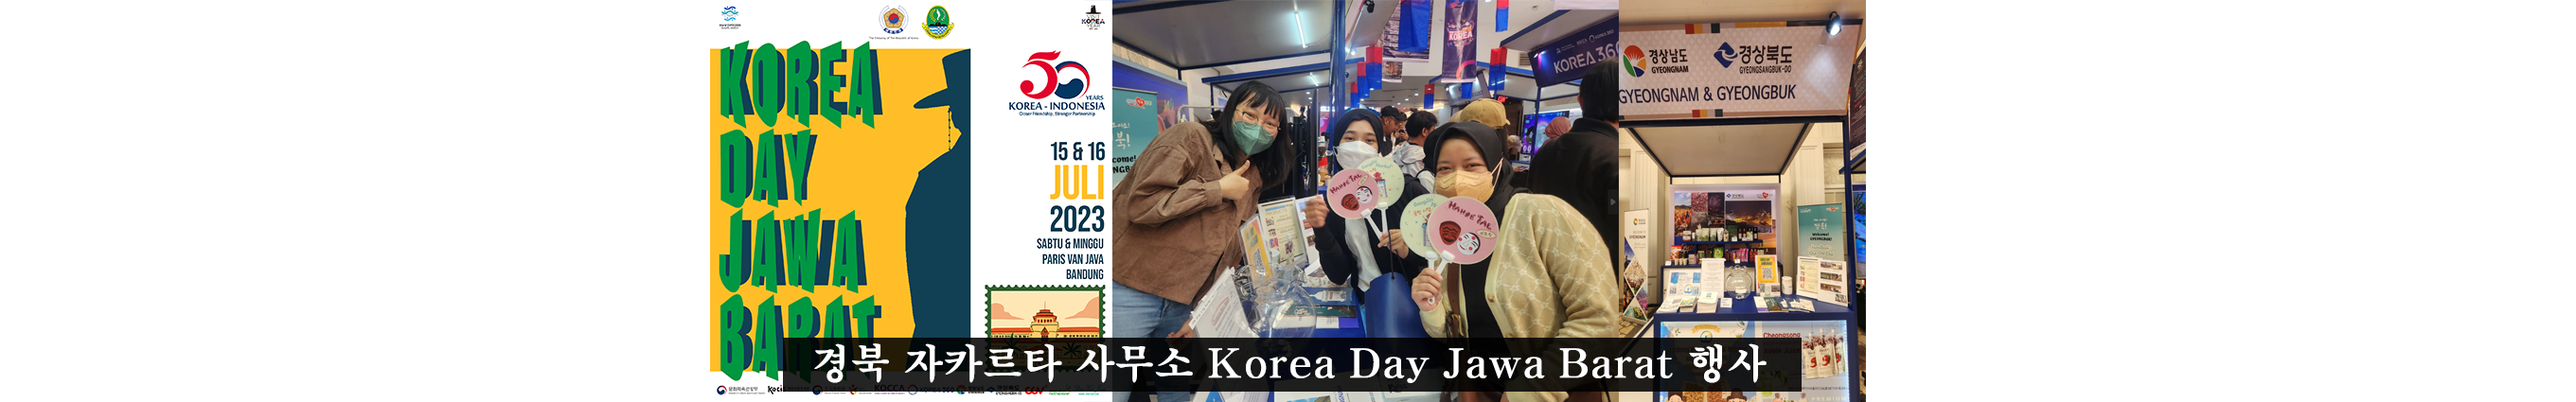 경북 자카르타 사무소 Korea Day Jawa Barat 행사